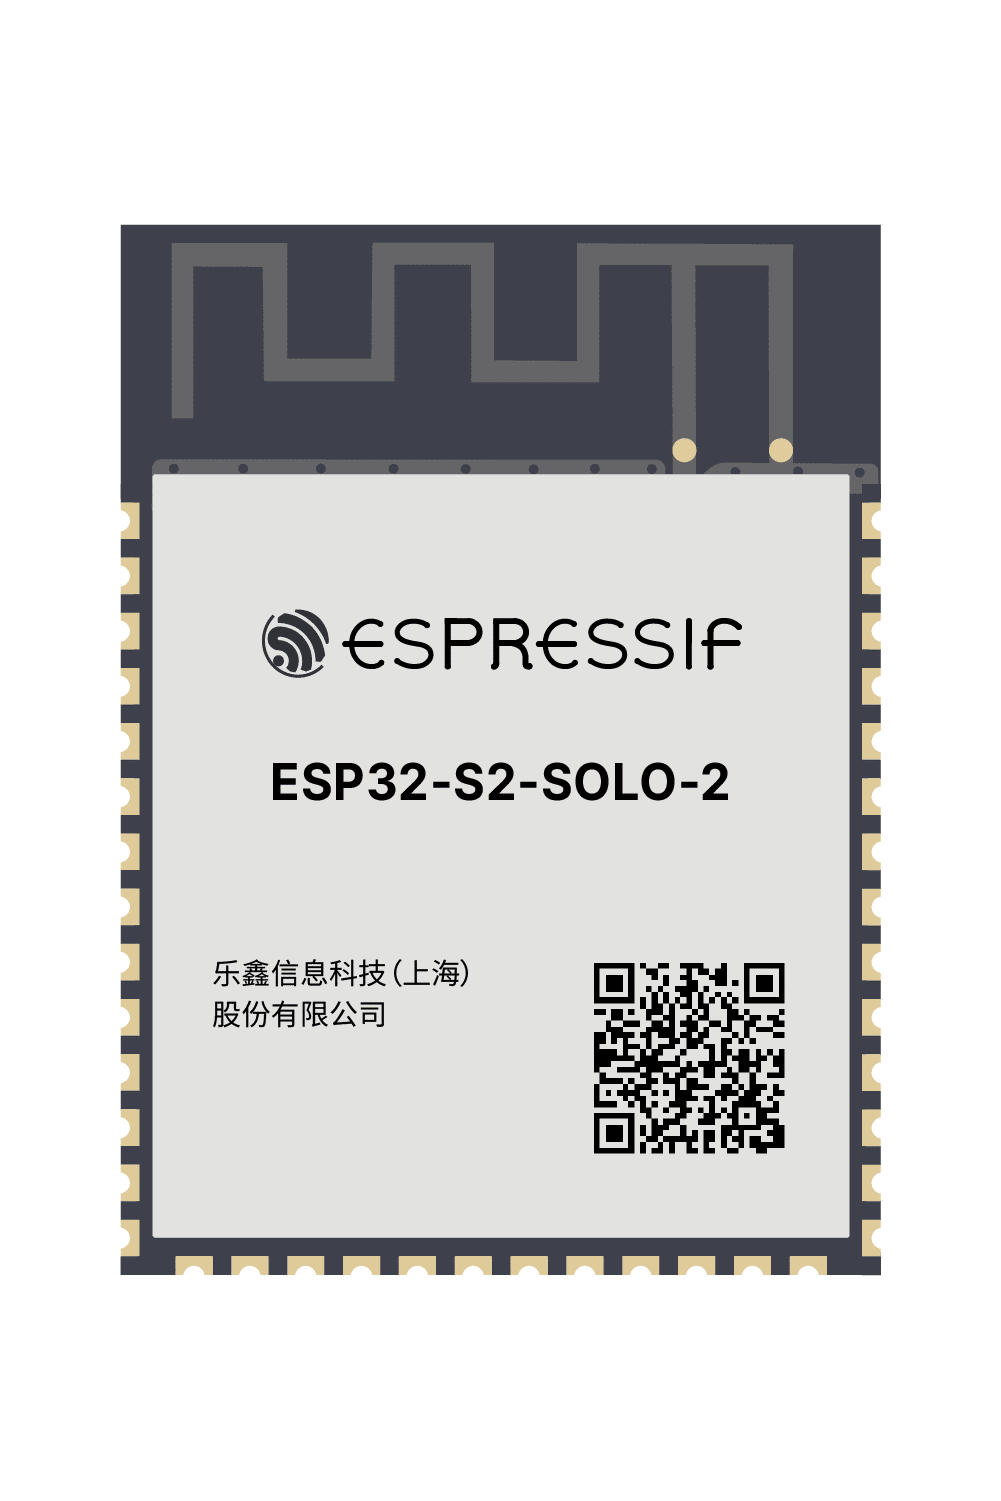 Espressif ESP32-S2-SOLO-2-N4 - moduł WiFi